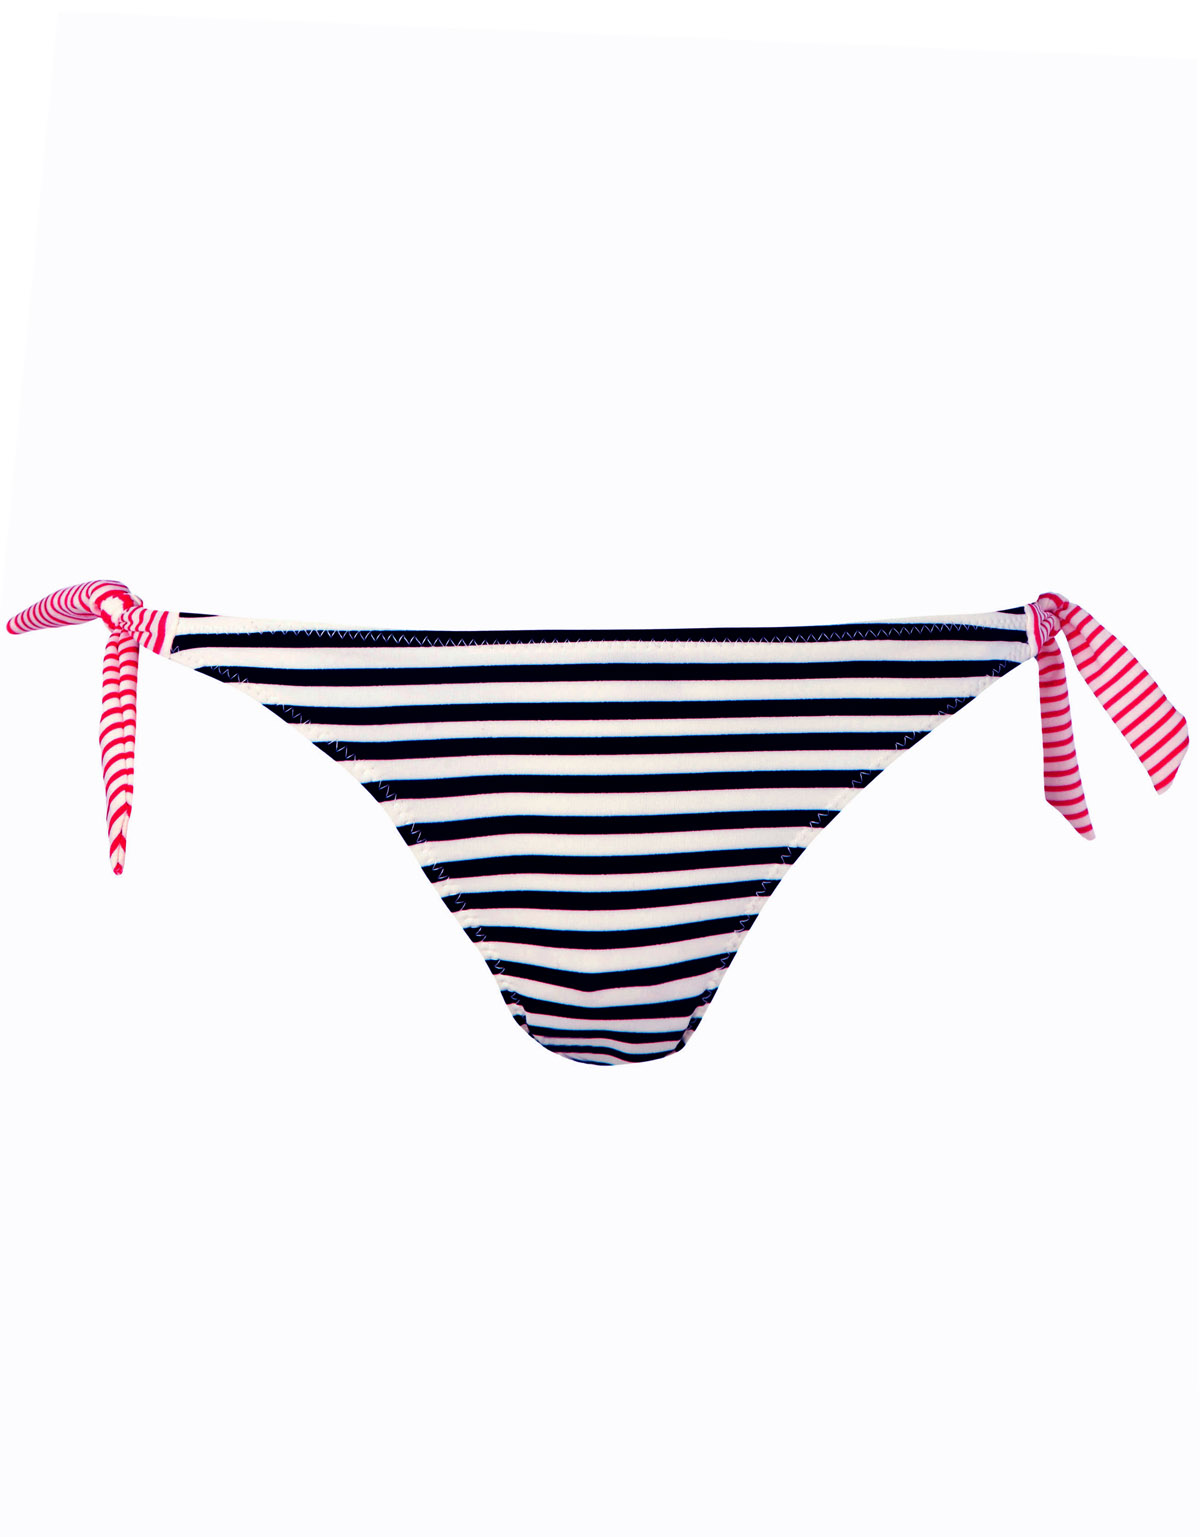 Accessorize - - Accessorize CREAM Horizontal Stripe Bikini Bottoms ...